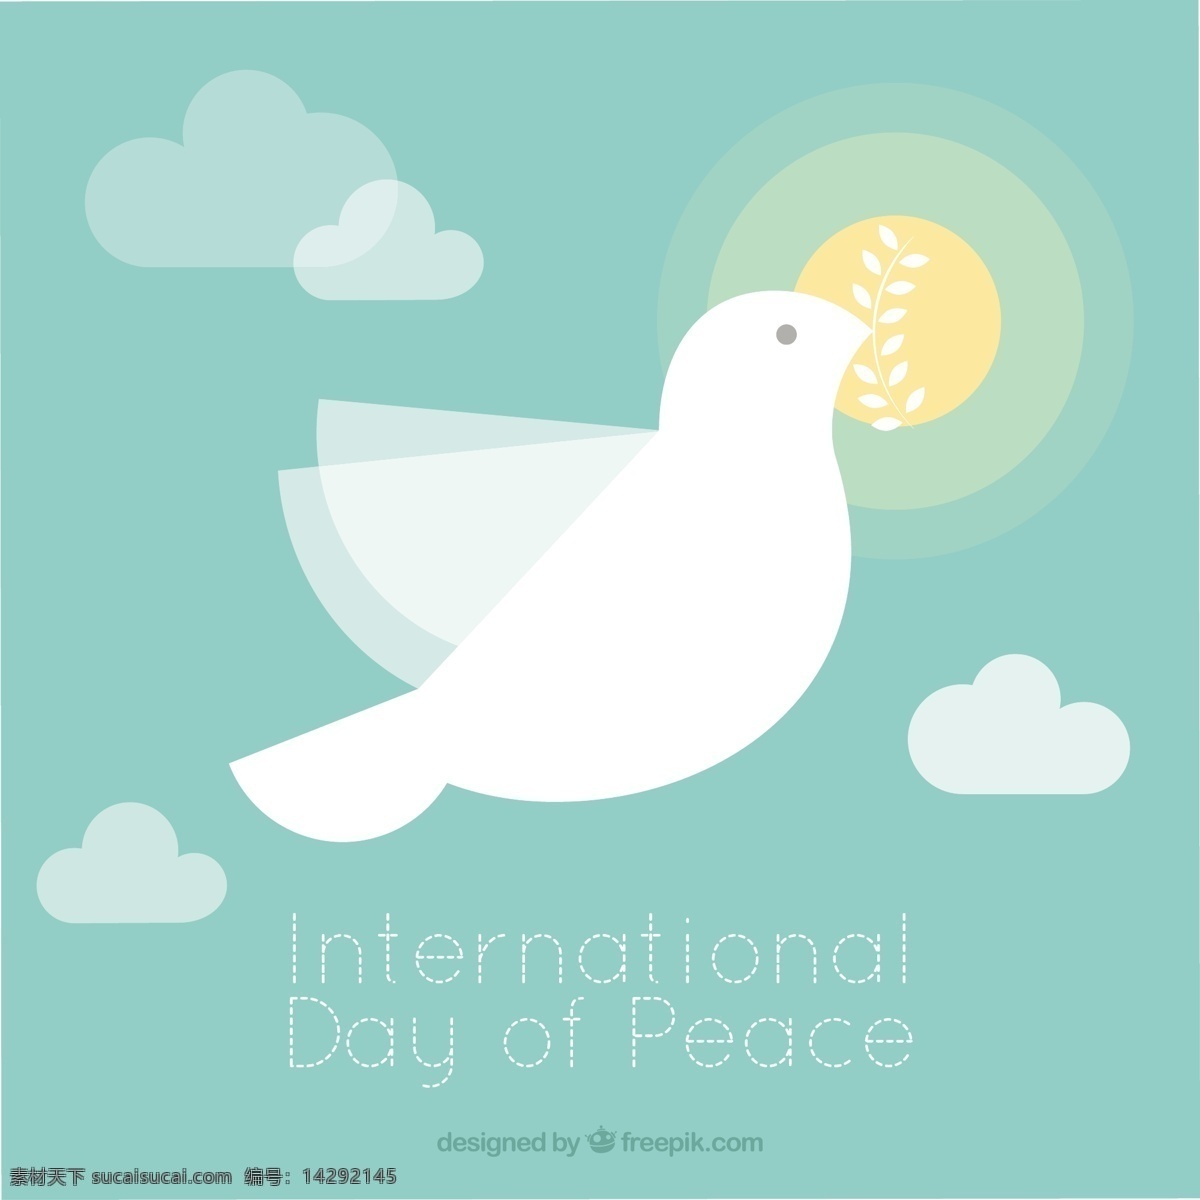 太阳 背景 飞翔 鸽子 教育 世界 云 庆典 节日 帮助 橄榄 和平 未来 象征 自由 分支 文化 庆祝 简约 国际 日